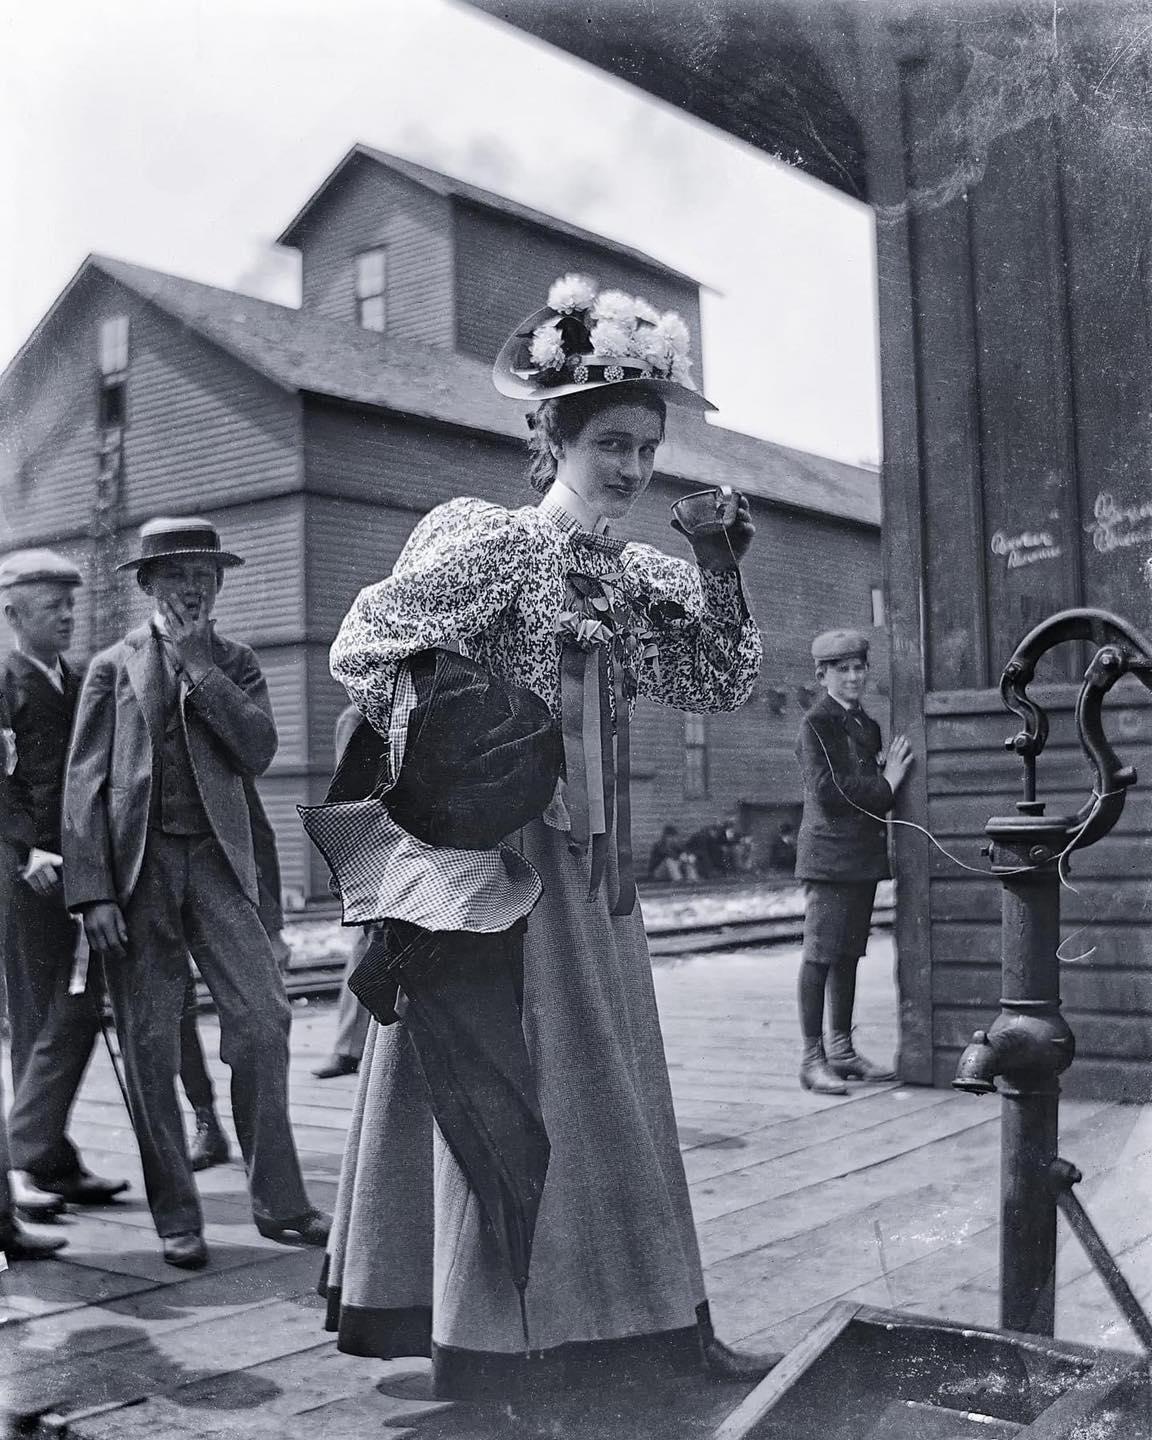 Femme buvant dans un gobelet commun à une pompe, 1899